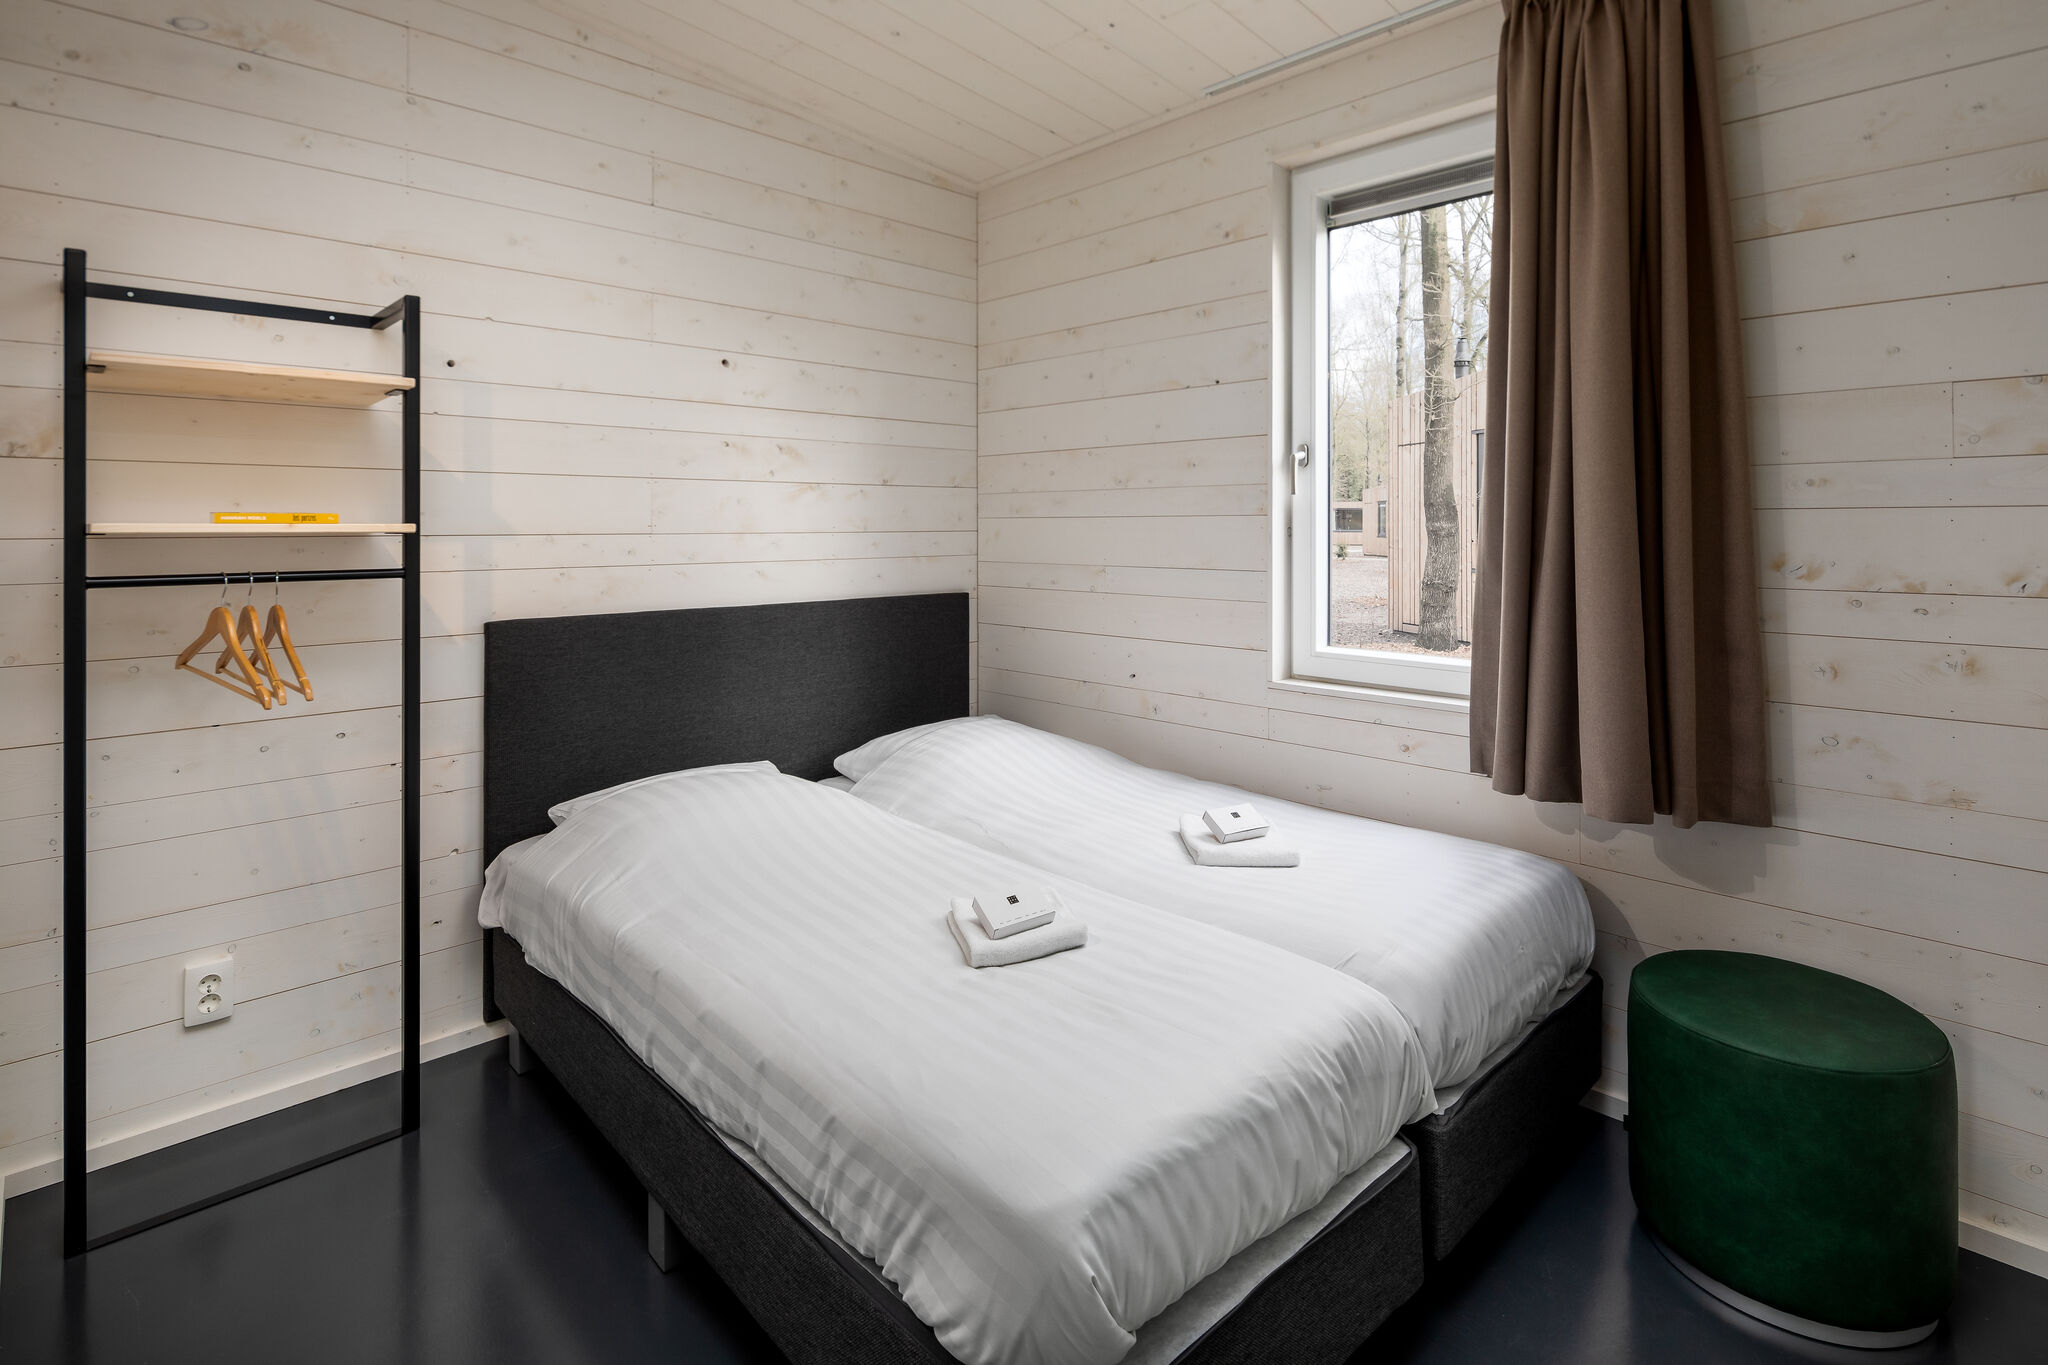 Lodge moderne avec four micro-ondes dans un cadre verdoyant